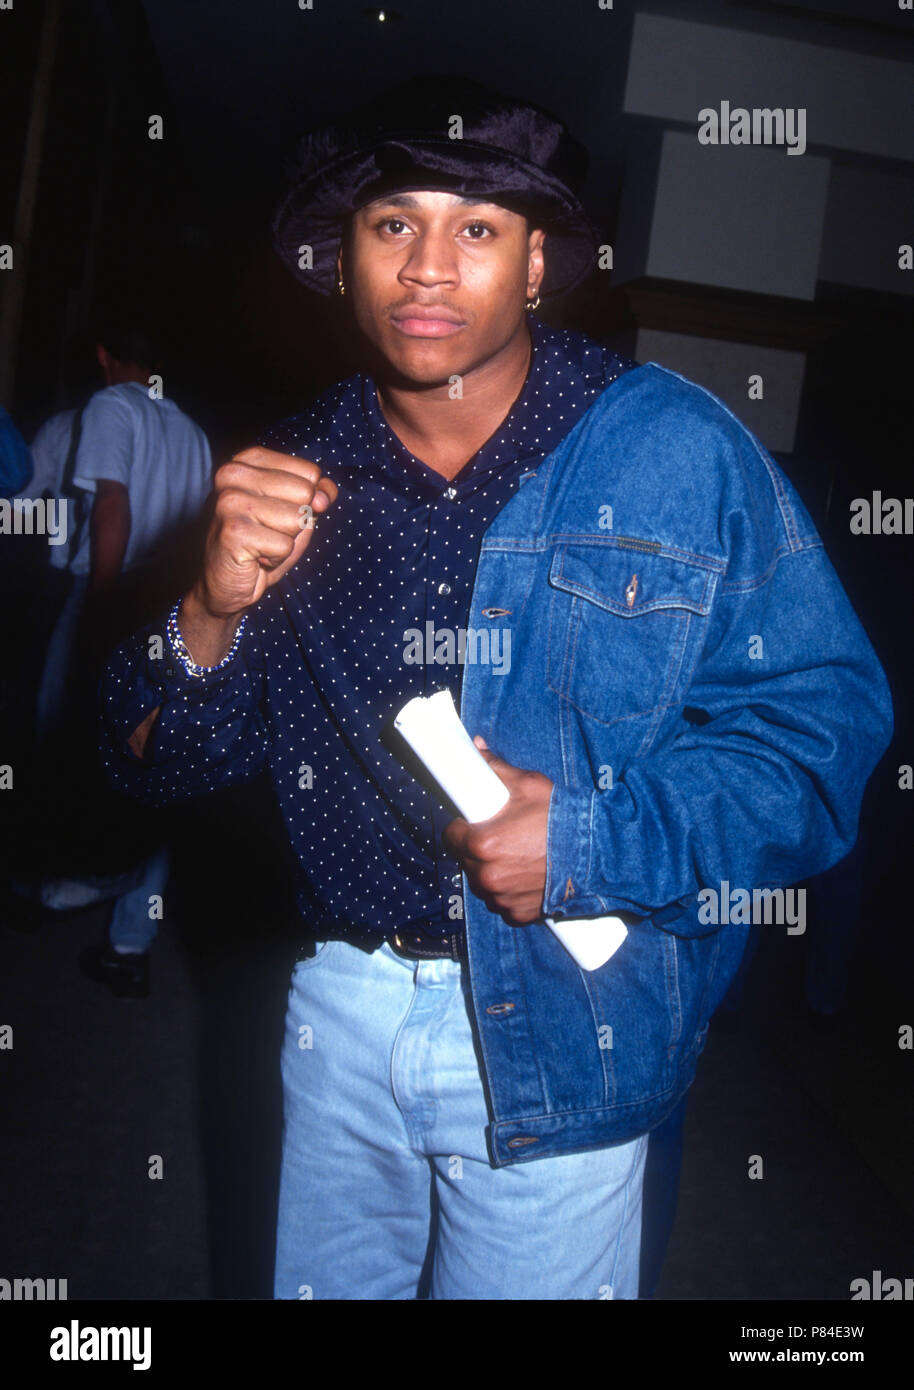 UNIVERSAL City, CA - febbraio 15: Rapper/attore LL Cool J avvistamento su Febbraio 15, 1992 a Universal Sheraton in città universale, California. Foto di Barry re/Alamy Stock Photo Foto Stock